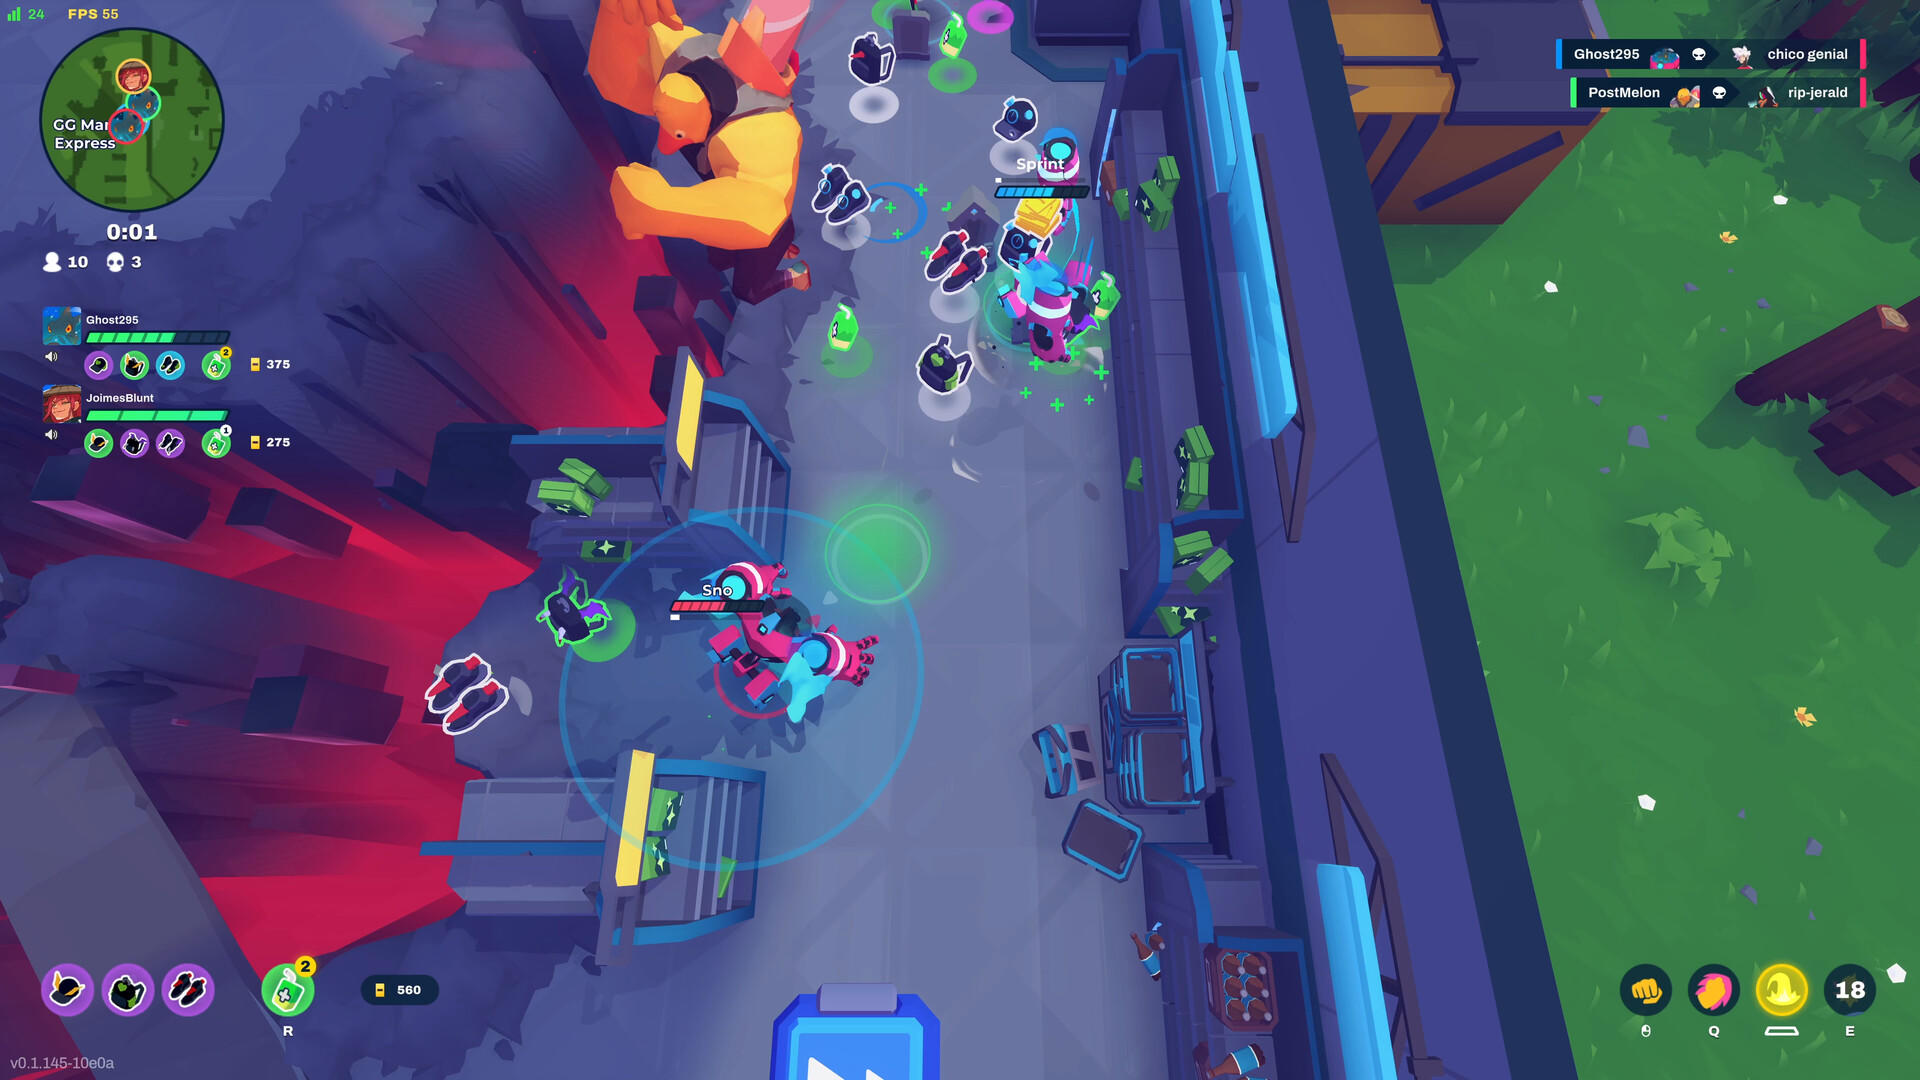 BAPBAP screenshot game